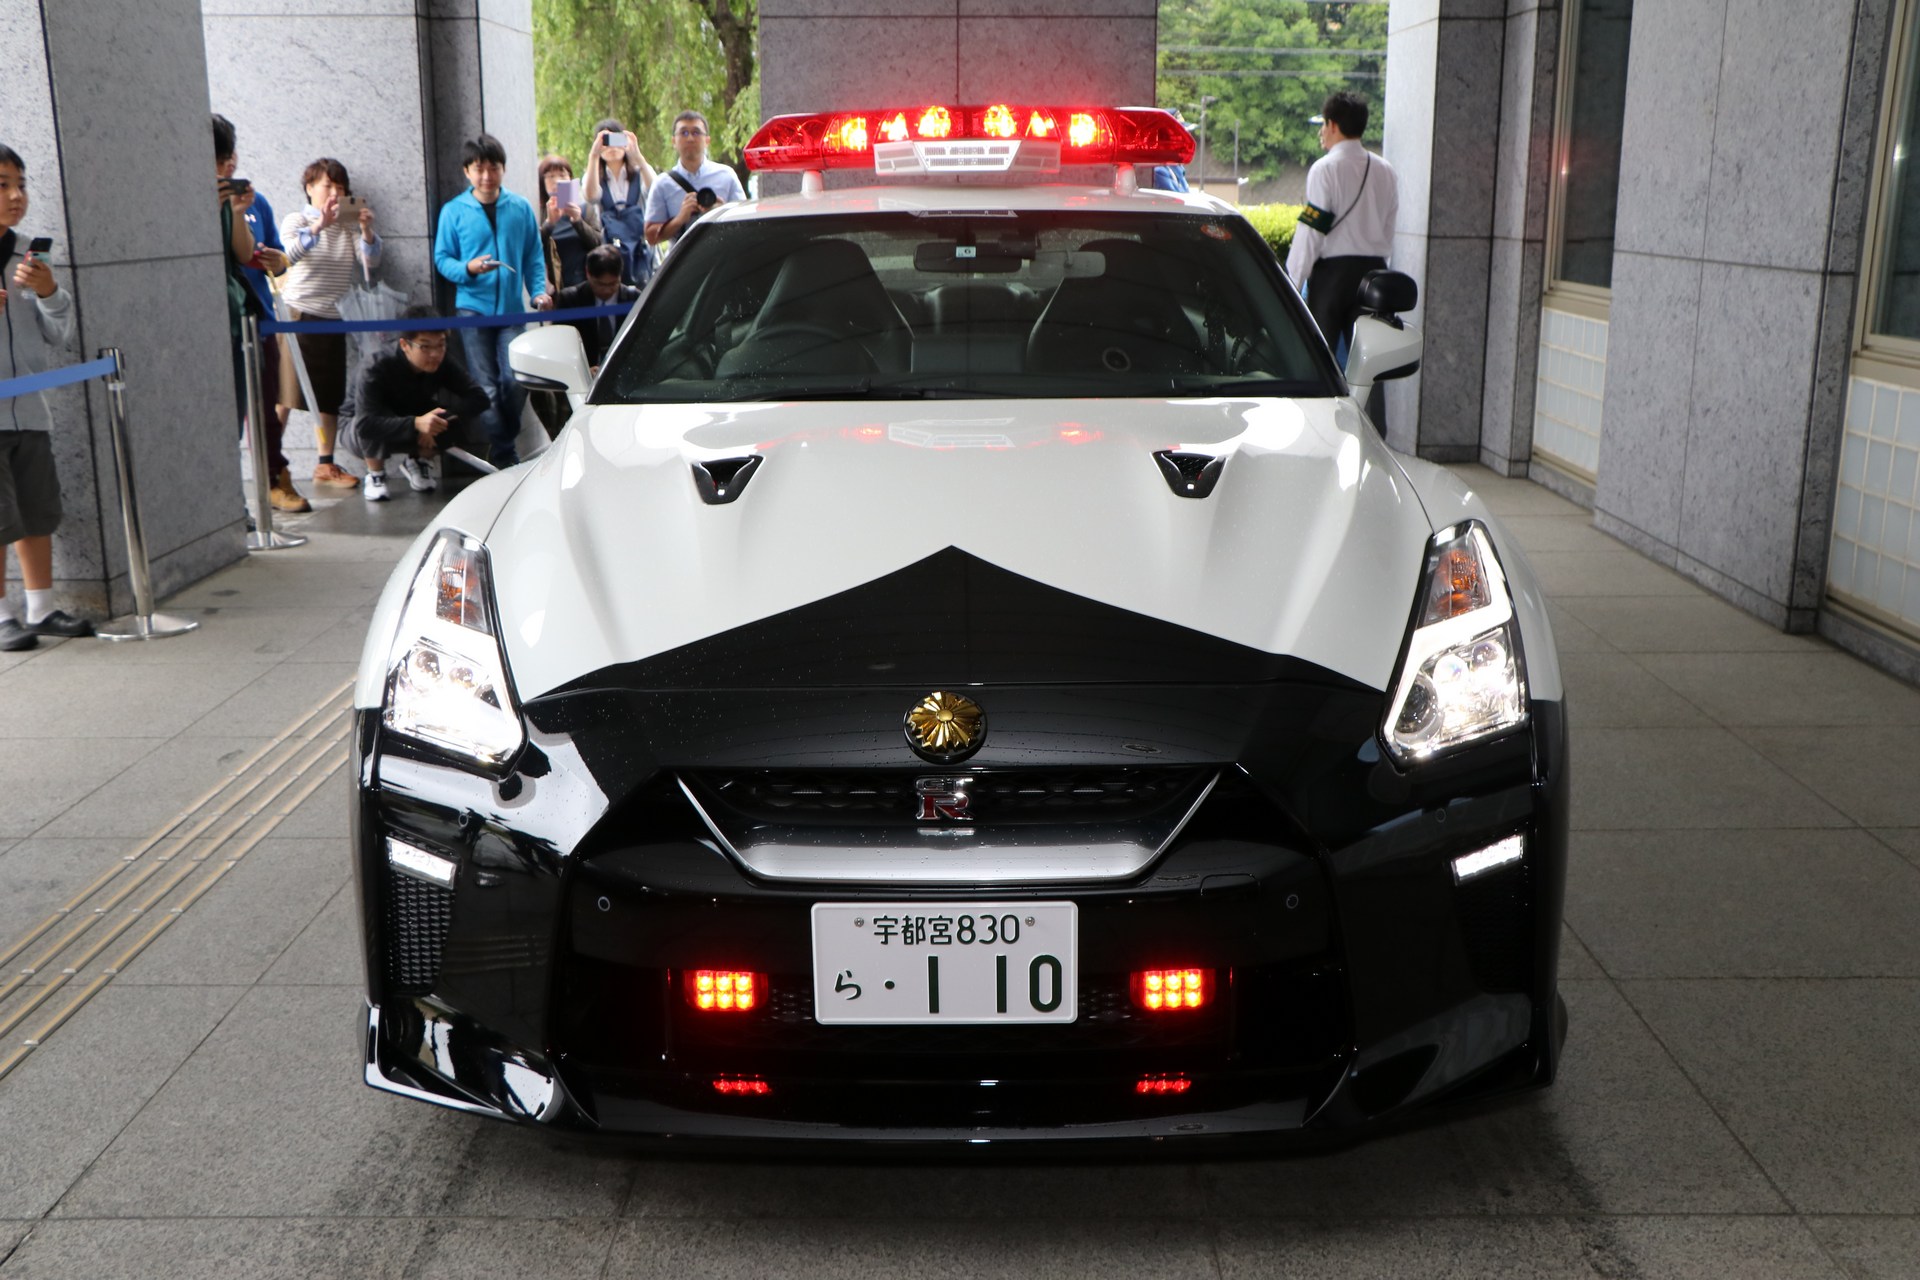 "بالصور" نيسان GT-R تدخل الخدمة رسميا بأسطول الشرطة اليابانية 14